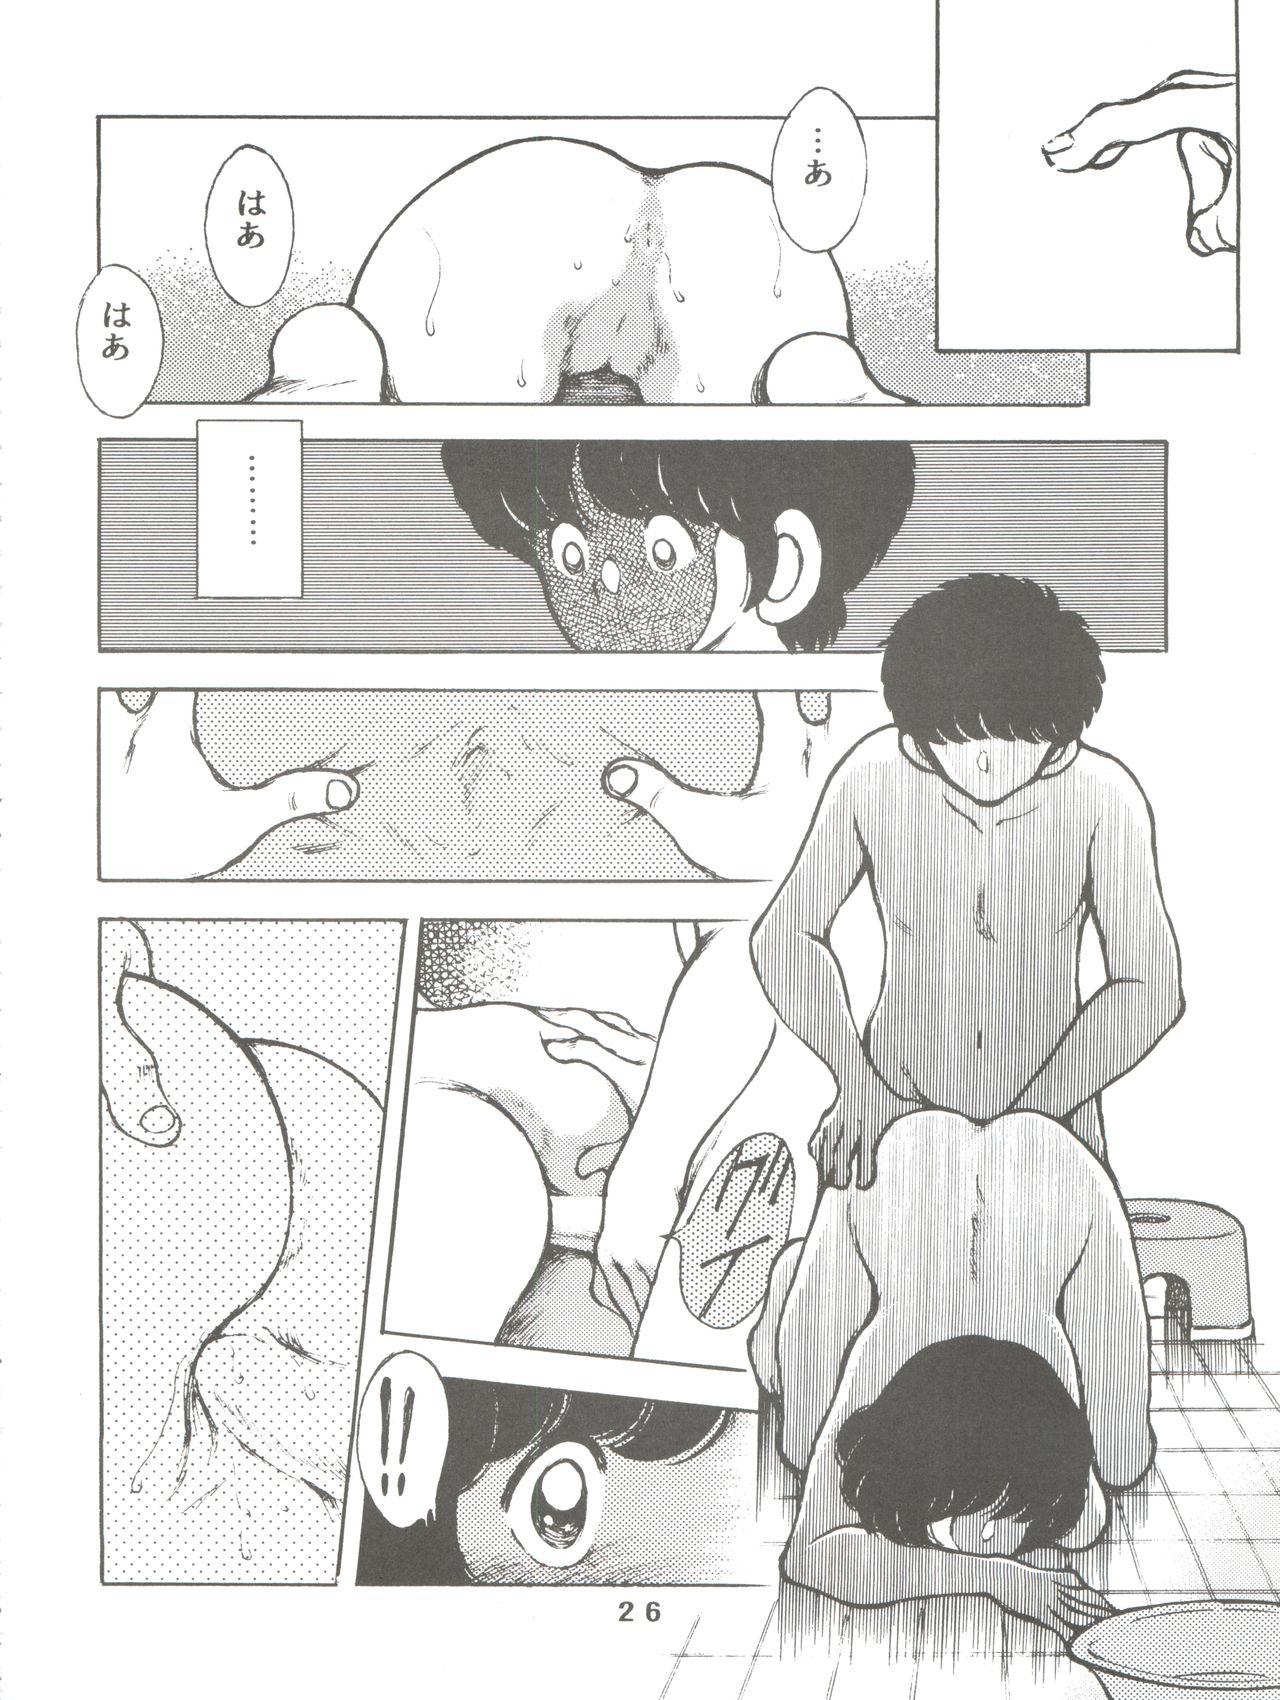 [STUDIO SHARAKU (Sharaku Seiya)] Kanshoku -TOUCH- vol.5 (Miyuki) [2000-08-13] 25